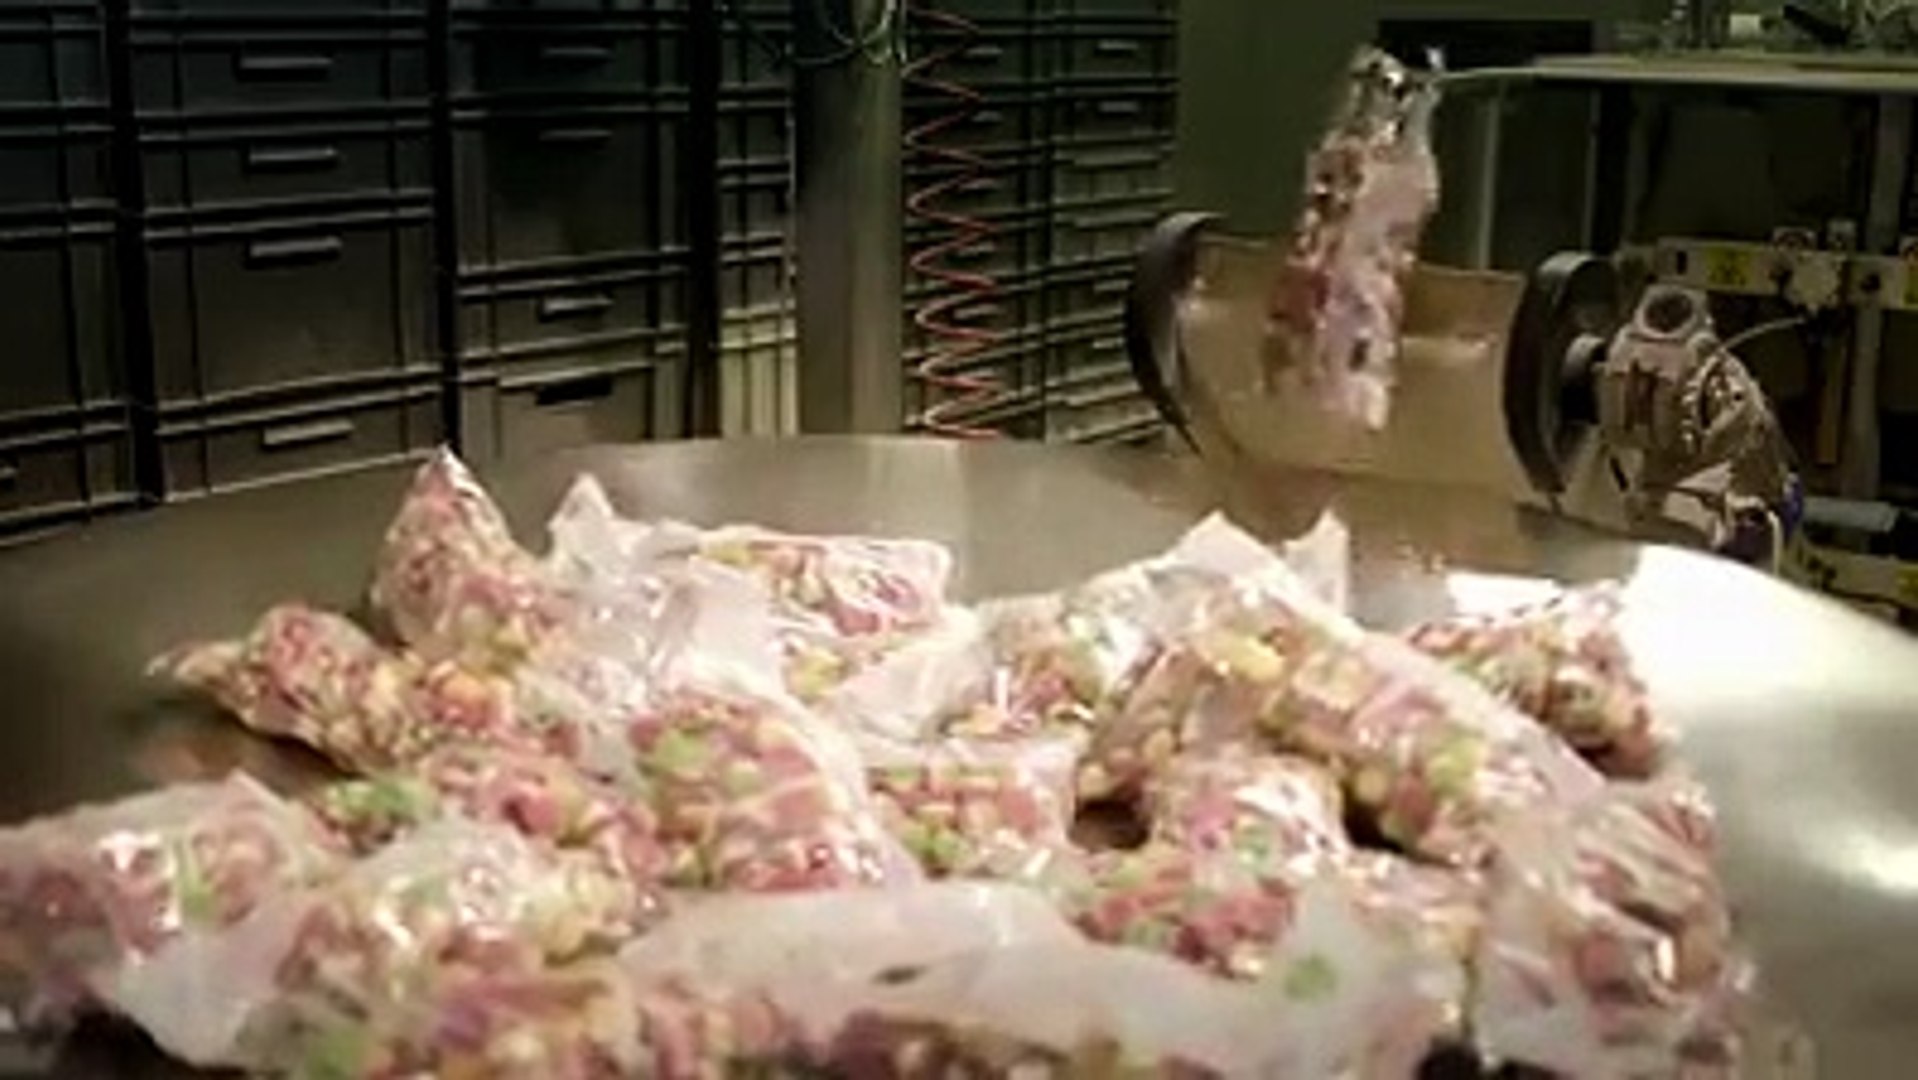 Comment sont fabriqués les bonbons composés de gélatine ? Voici une vidéo  qui ne vous mettra pas en appétit ! - Vidéo Dailymotion